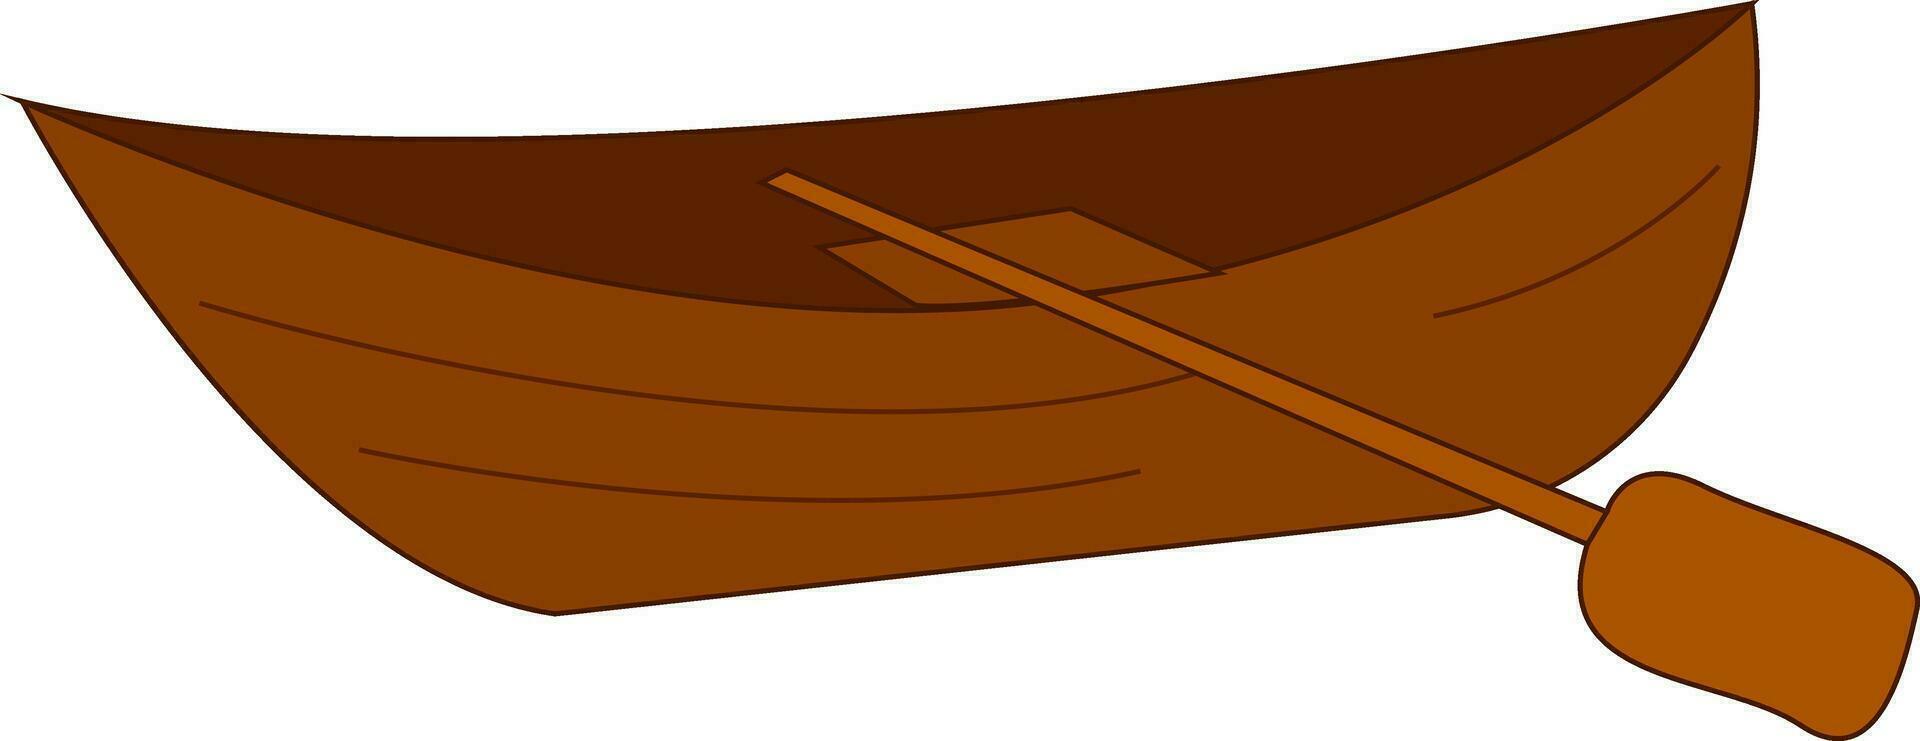 clip art van de bruin boot met de rij, vector of kleur illustratie